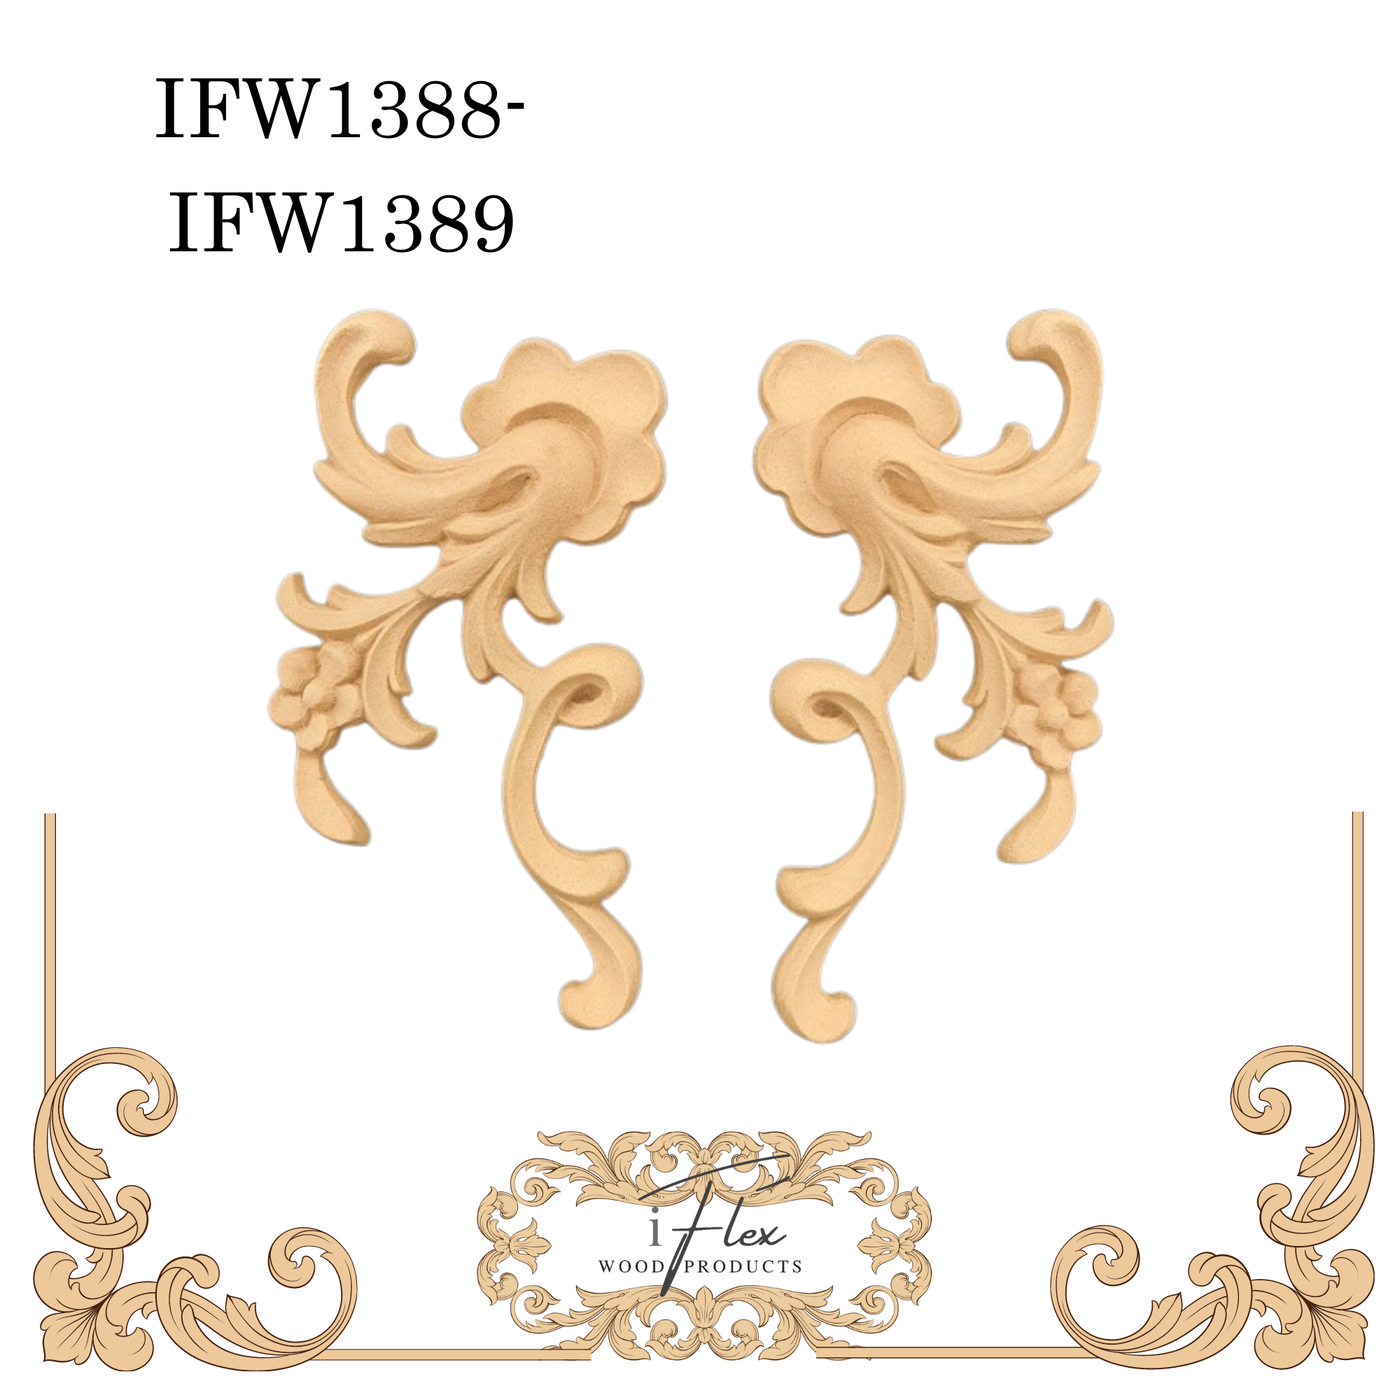 IFW 1388-1389